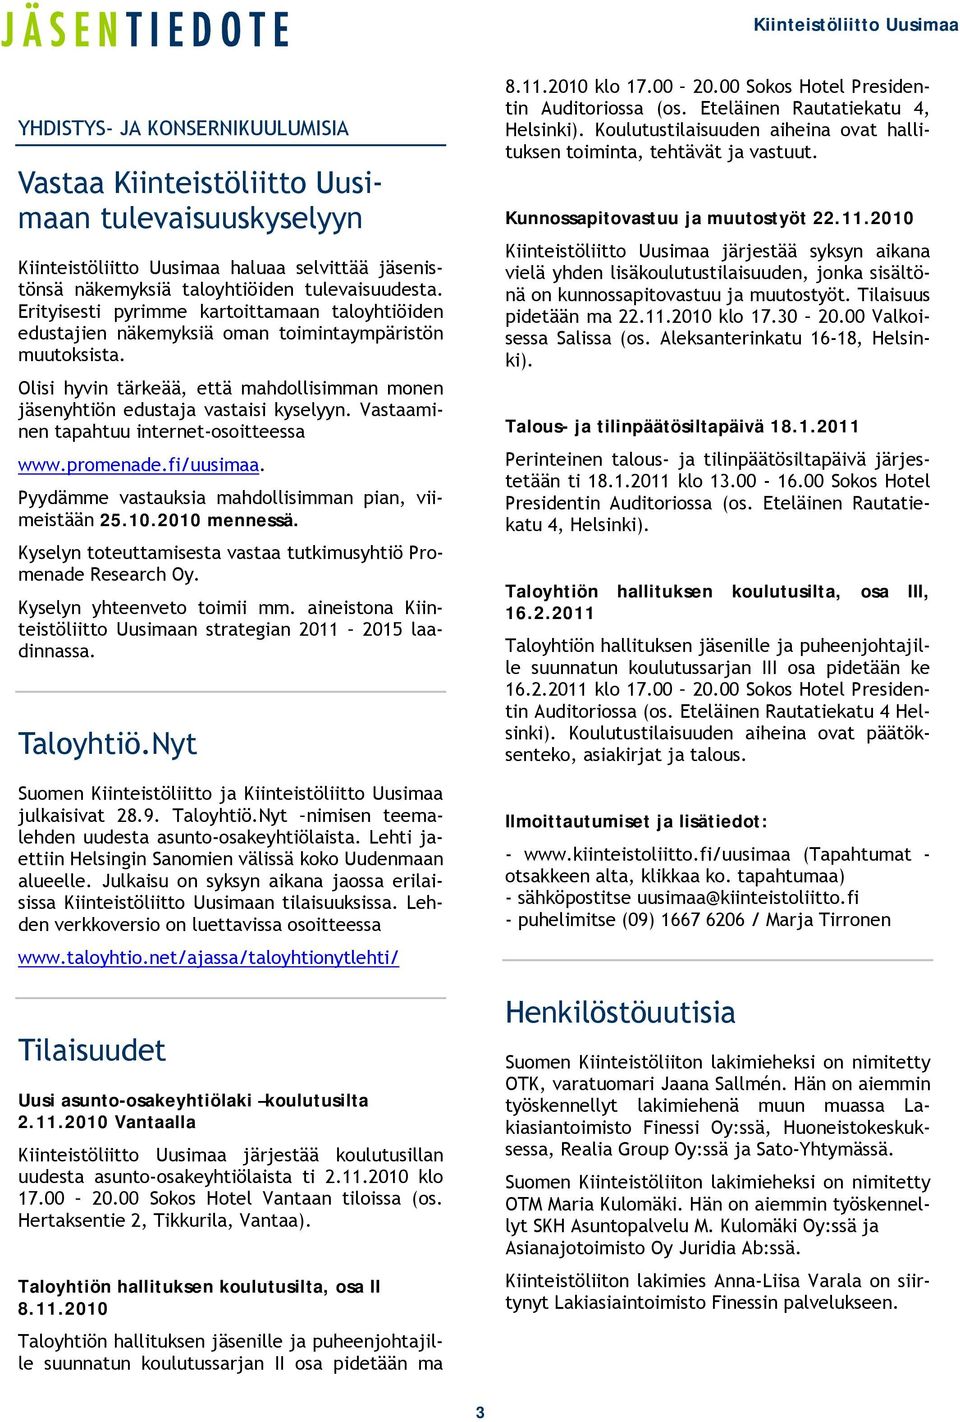 Vastaaminen tapahtuu internet-osoitteessa www.promenade.fi/uusimaa. Pyydämme vastauksia mahdollisimman pian, viimeistään 25.10.2010 mennessä.